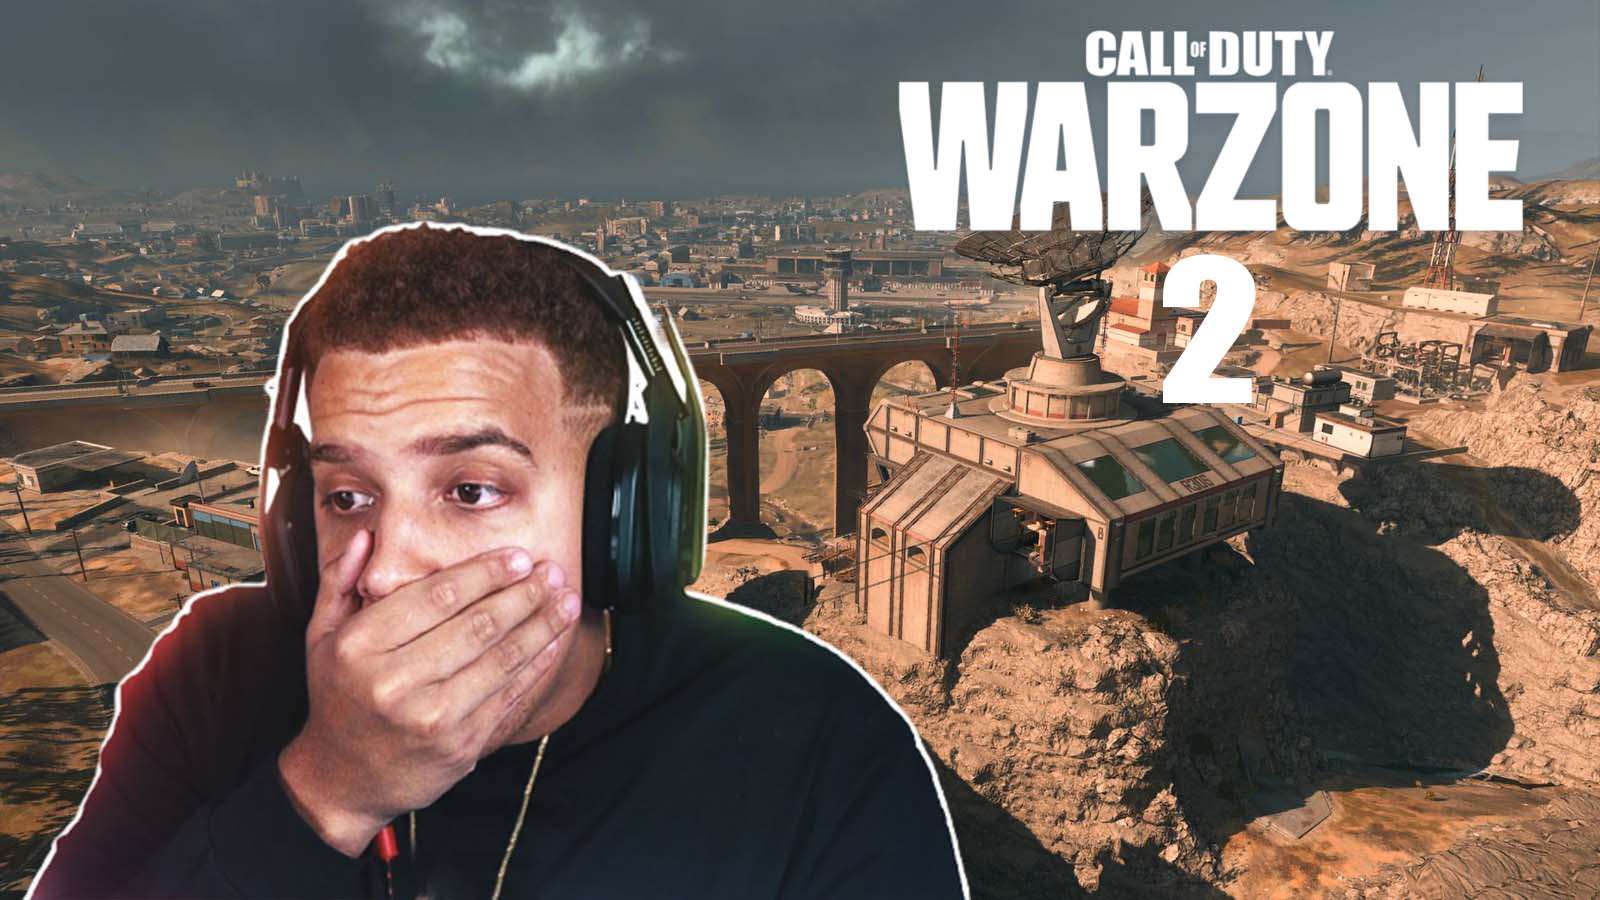 FaZe Swagg with Warzone 2 logo